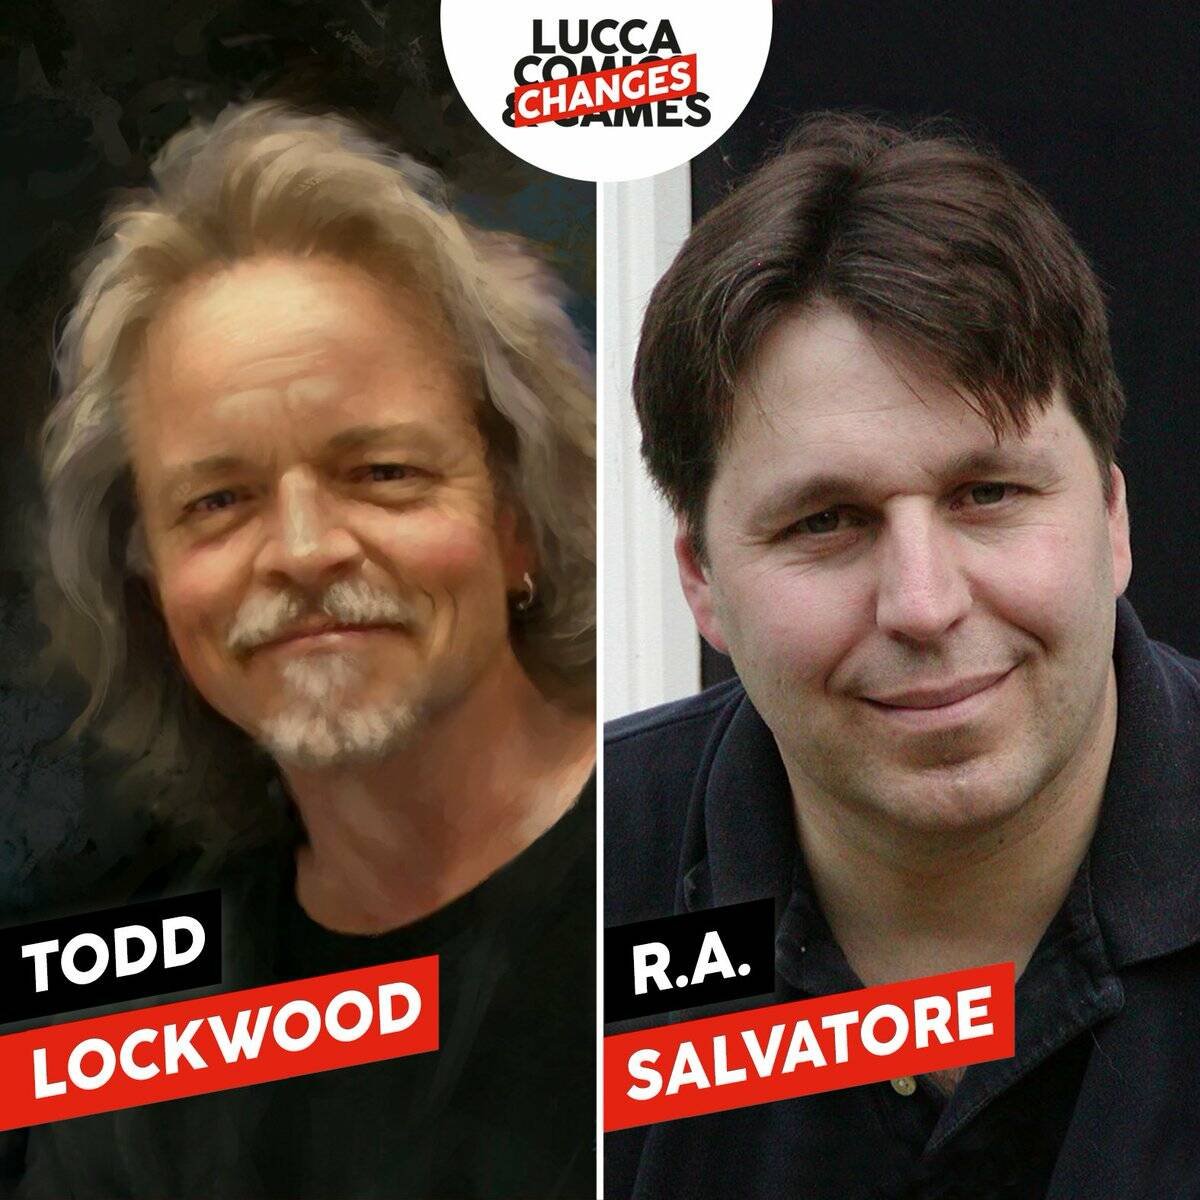 Immagine di Lucca Changes annuncia l'incontro digitale con R.A. Salvatore e Todd Lockwood